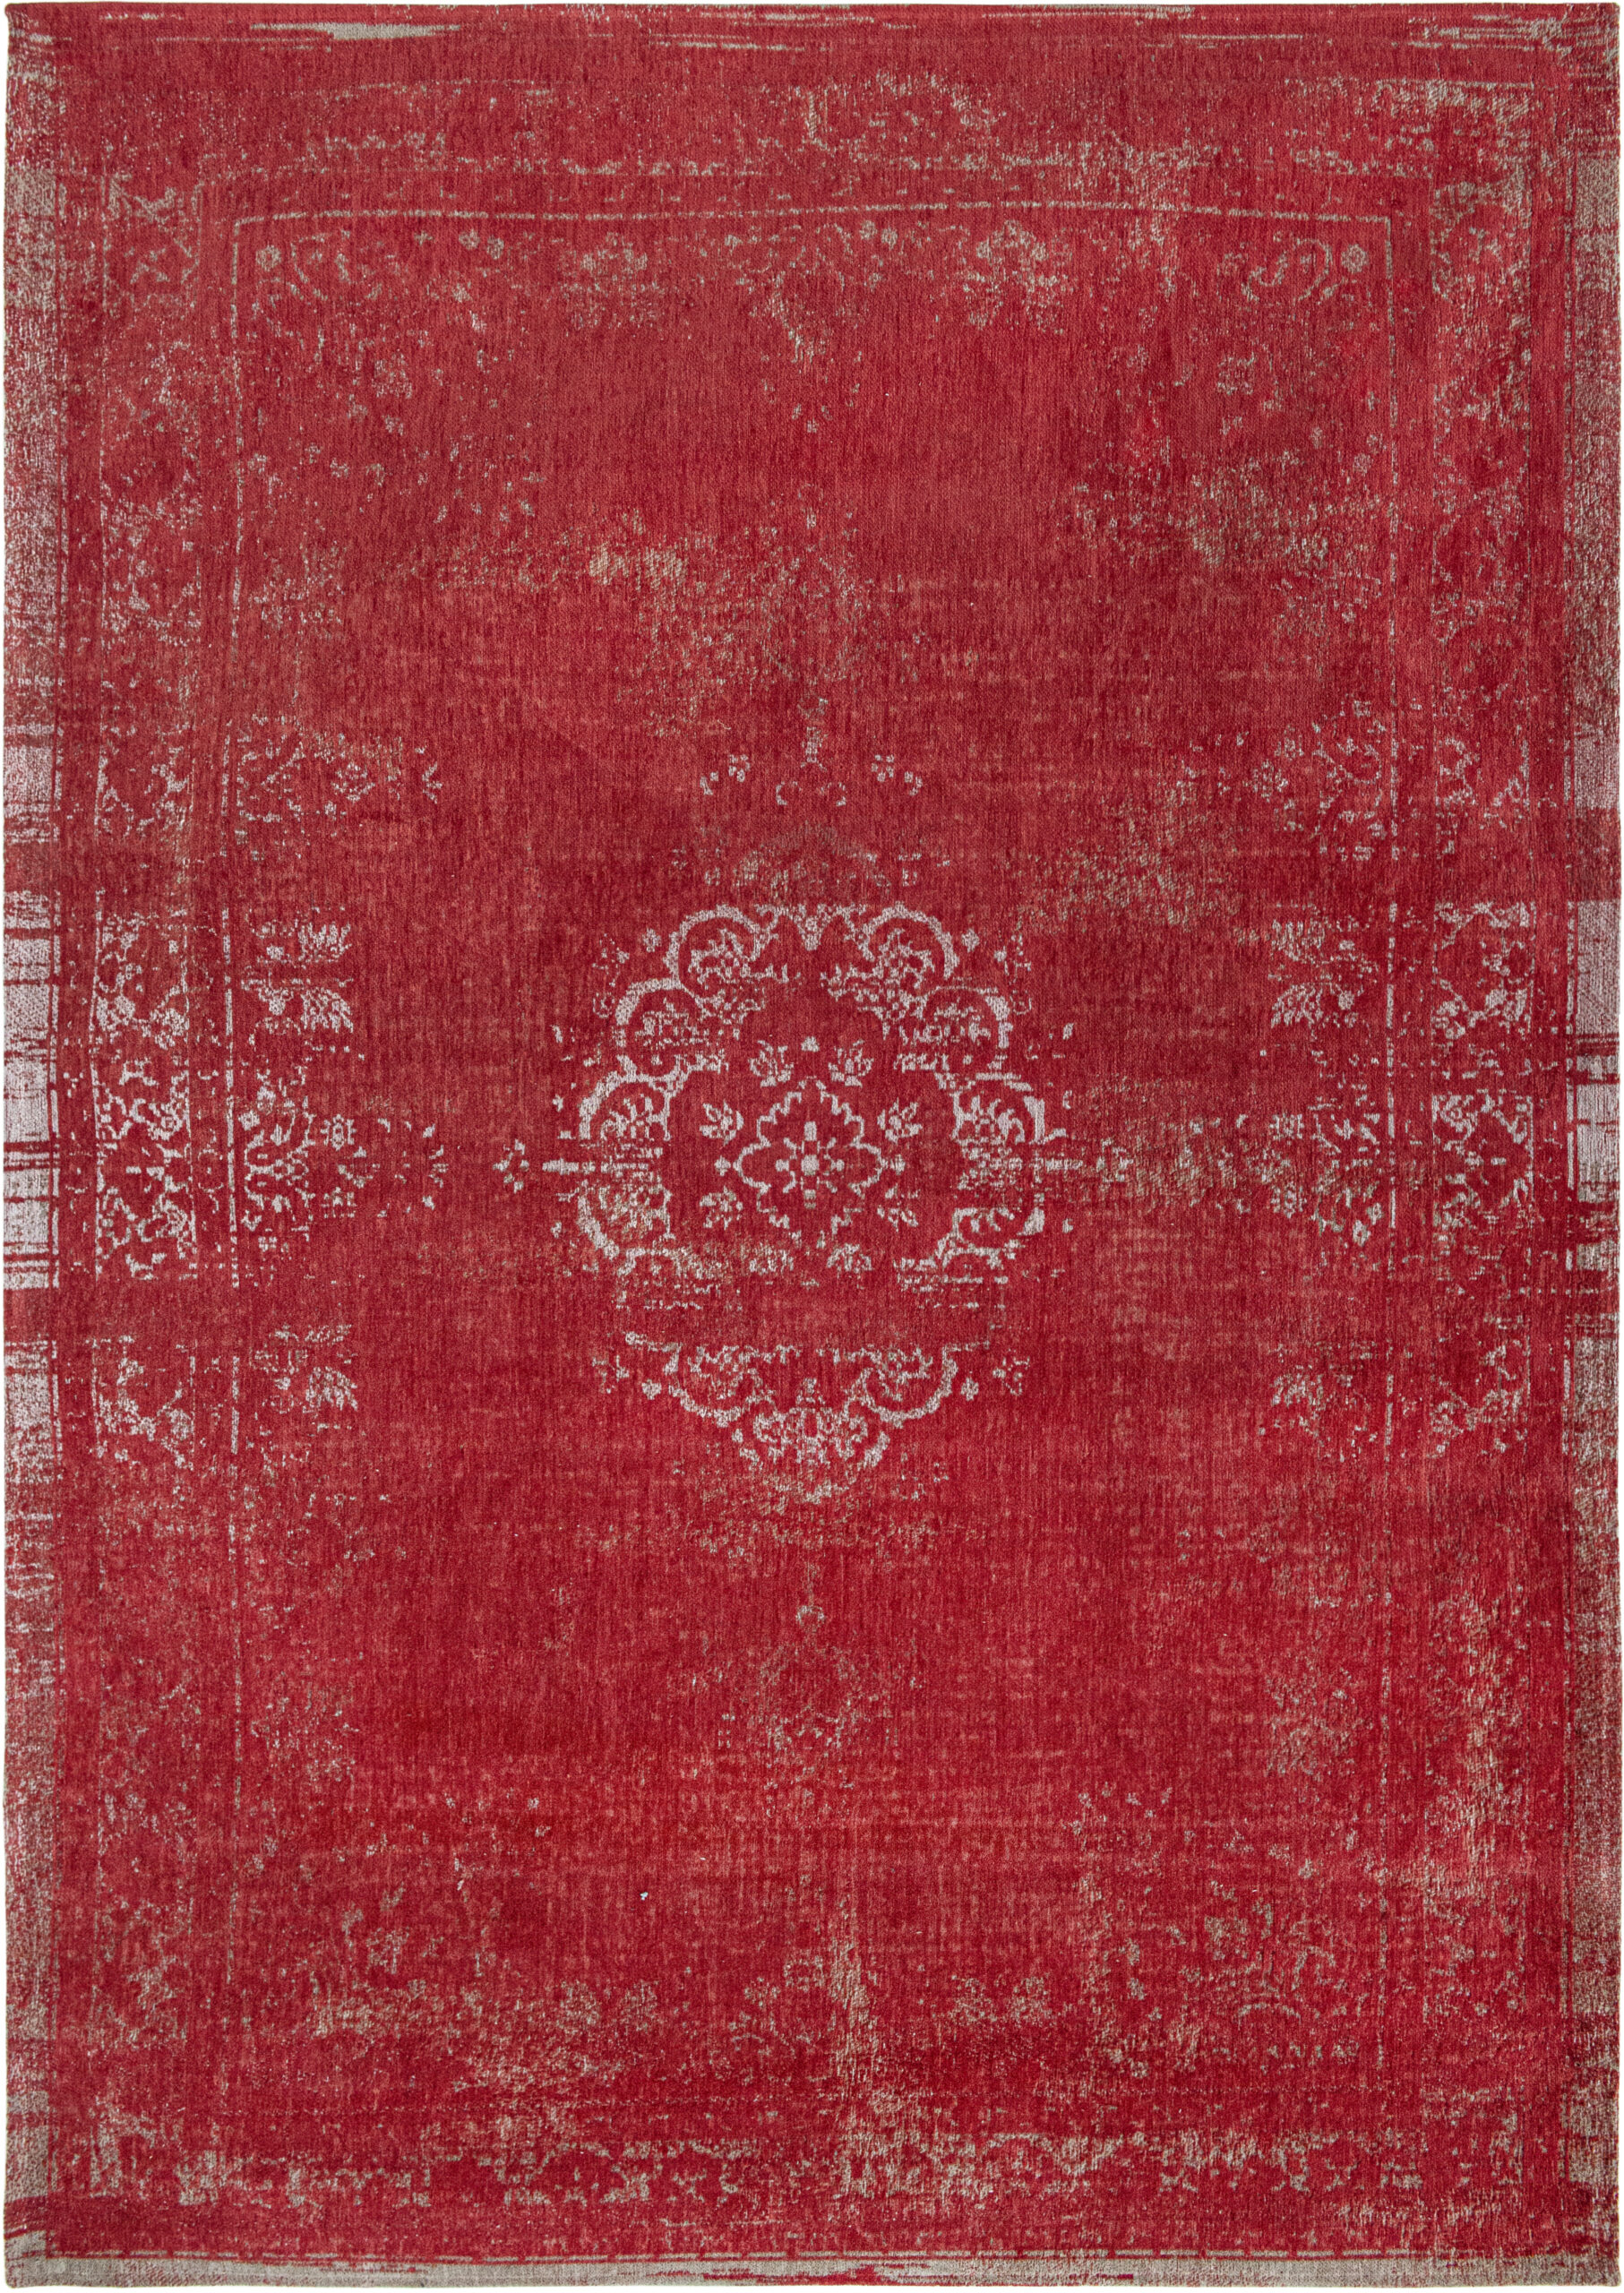 Czerwony Dywan Klasyczny - Cherry 9147 - Rozmiar: 80x150 cm